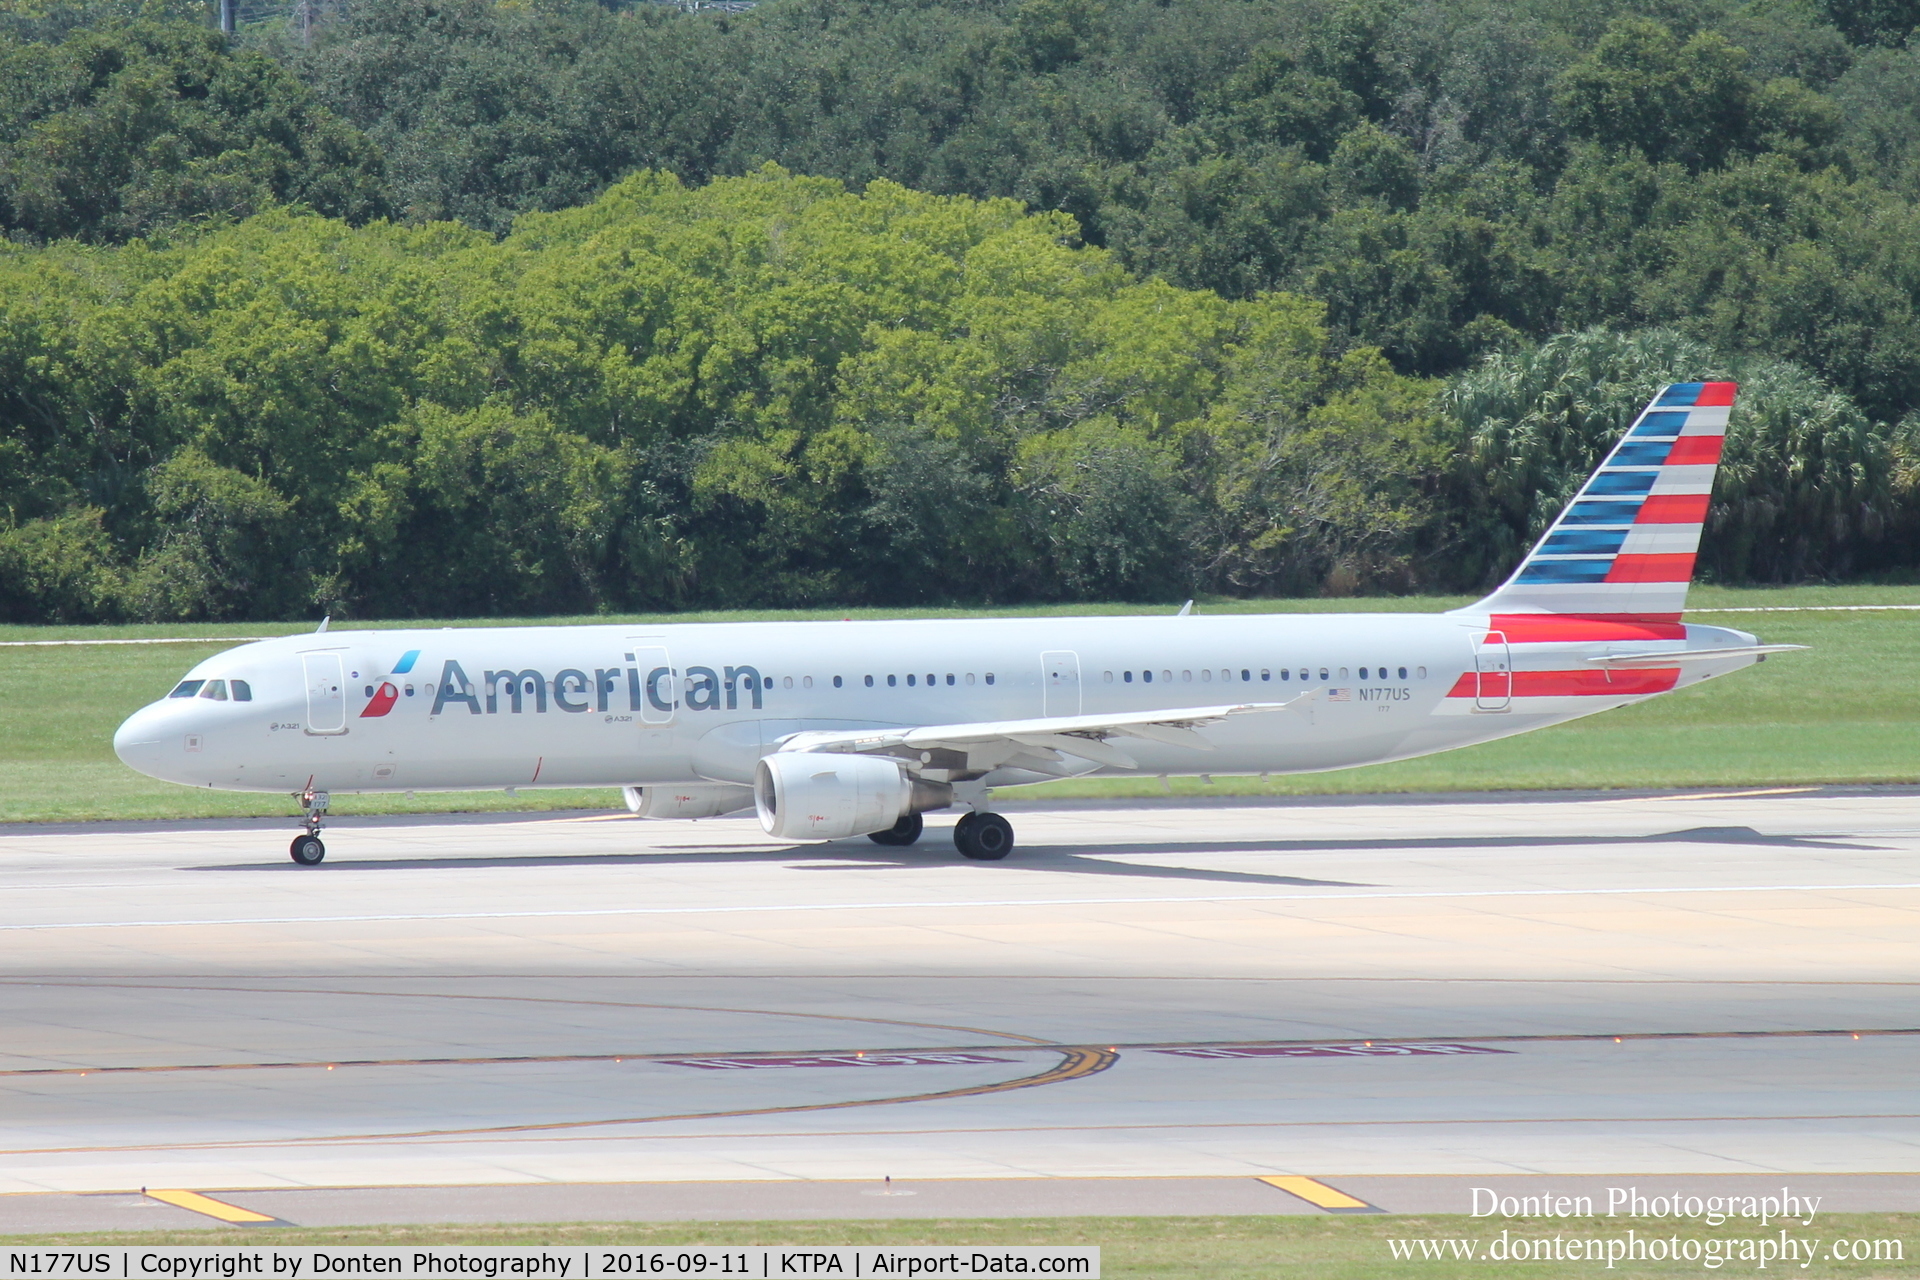 N177US, 2001 Airbus A321-211 C/N 1517, American Flight 814 (N177US) departs Tampa International Airport enroute to Philadelphia International Airport